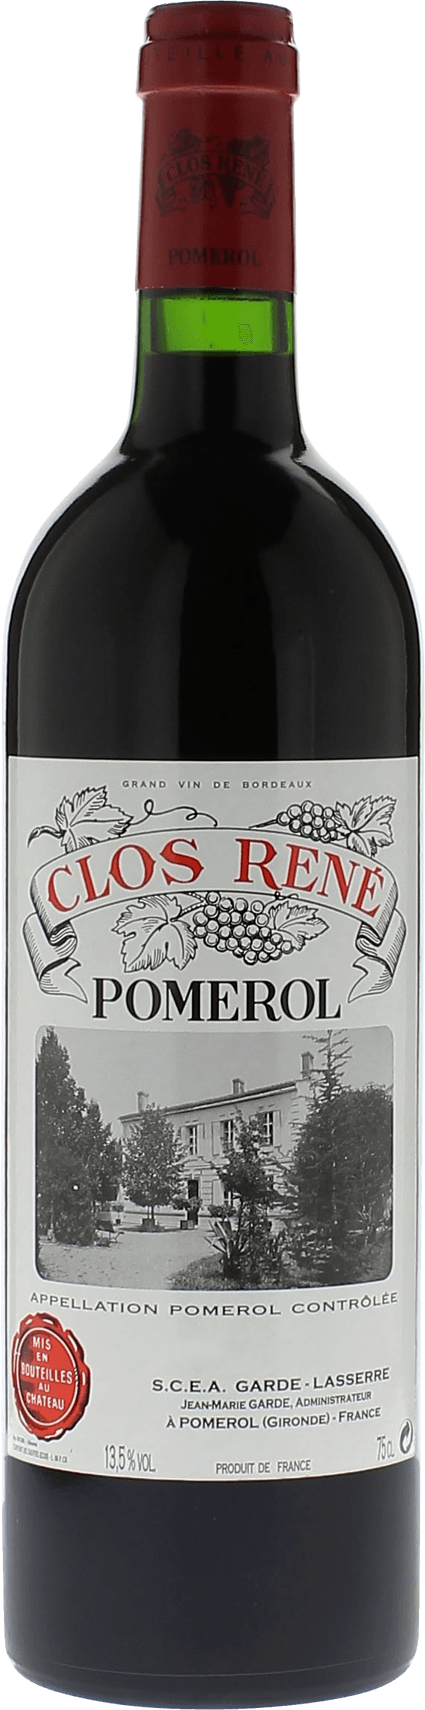 Clos rene 1994  Pomerol, Bordeaux rouge